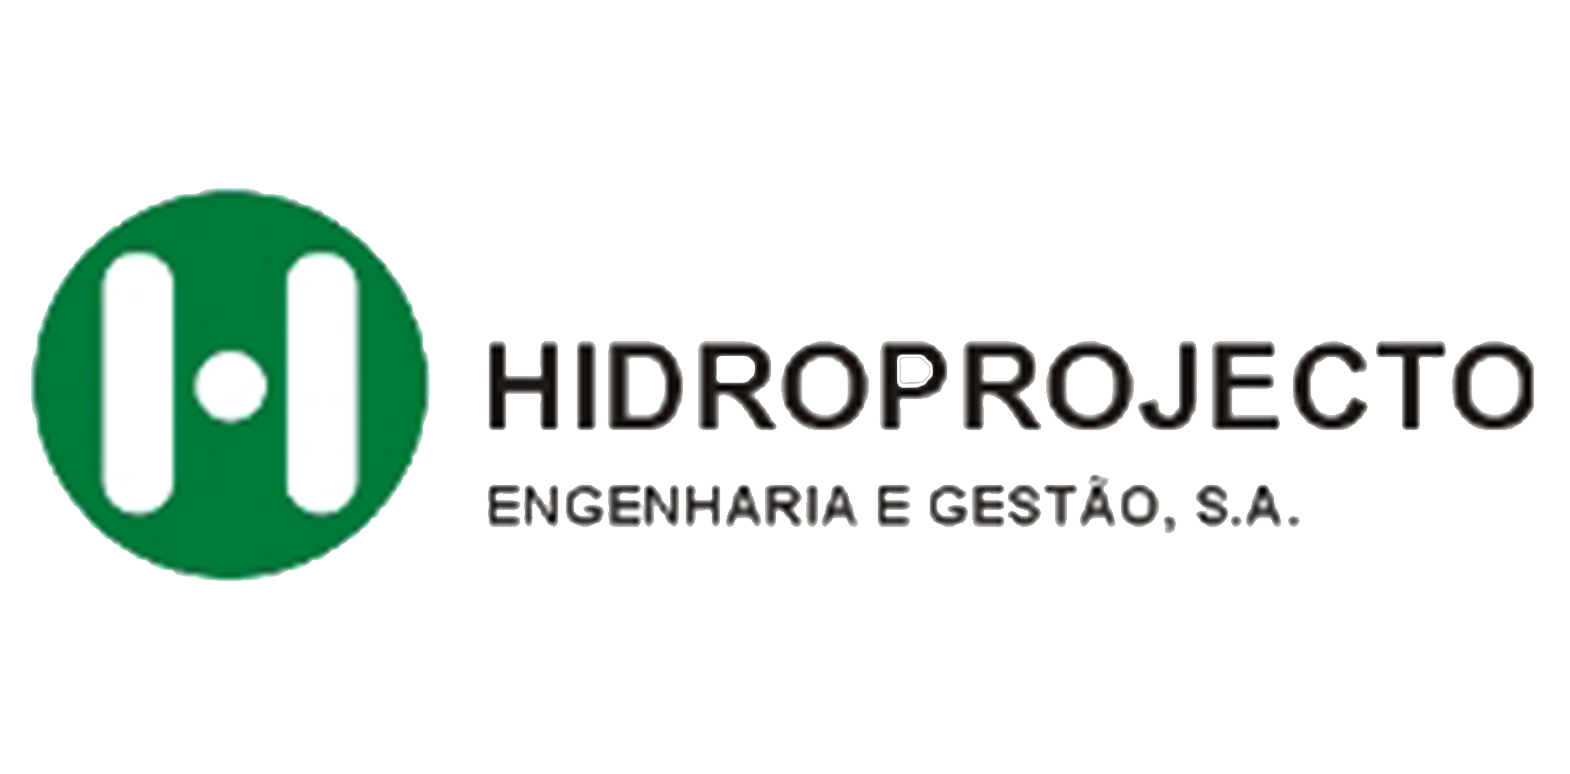 Hidroprojecto - engenharia e gestão s.a